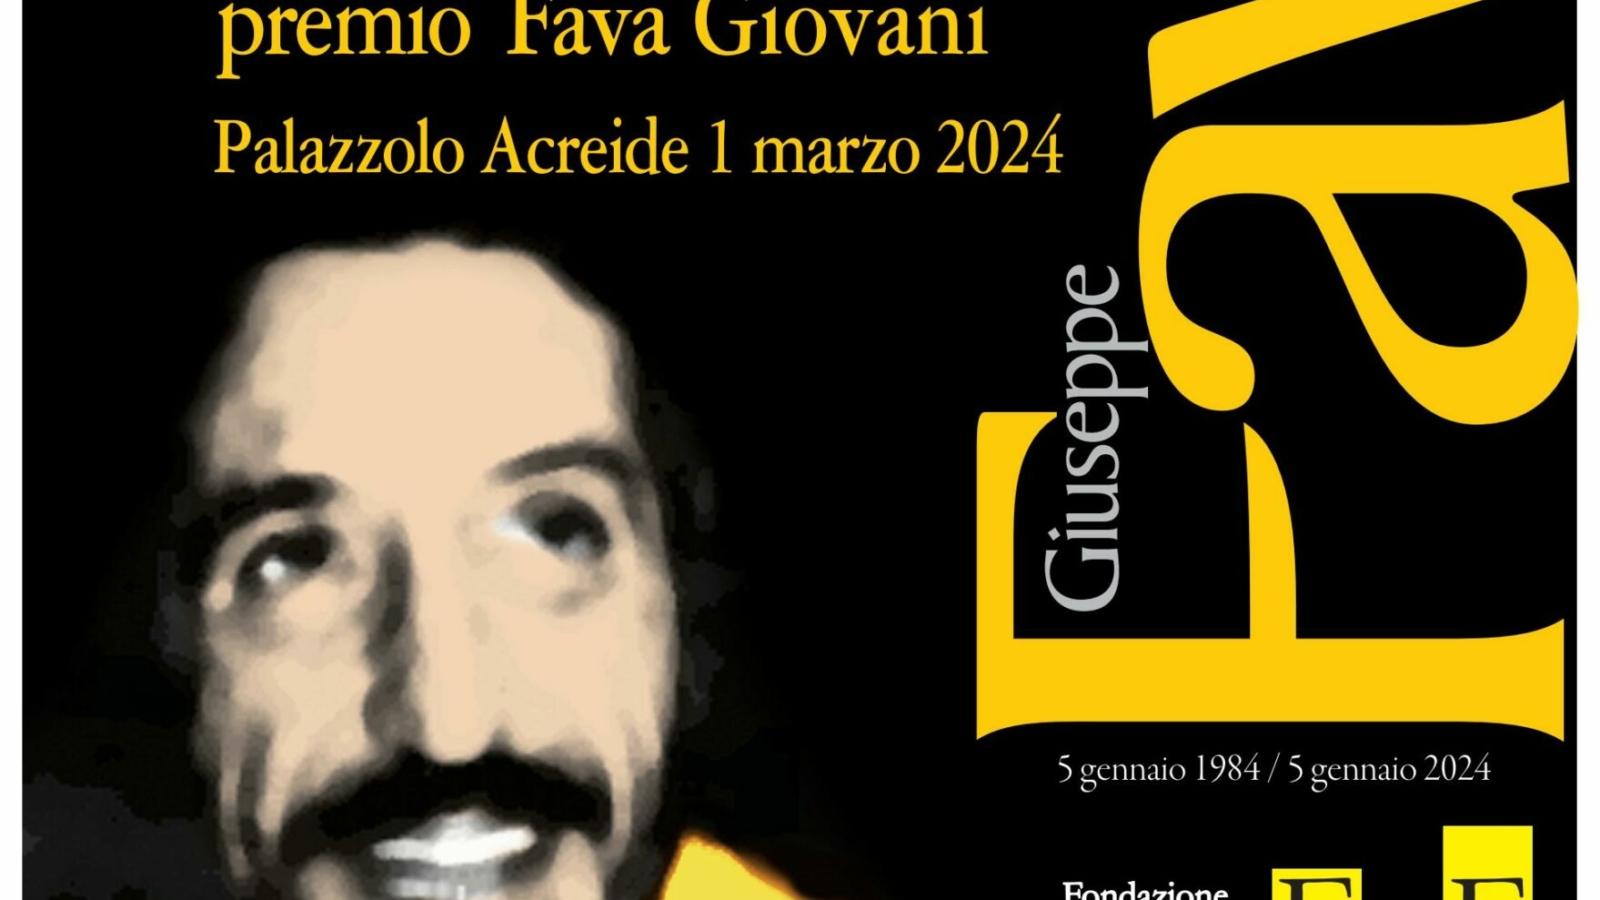 locandina Premio Fava Giovani 2024 vers5 tr (1)_page_1